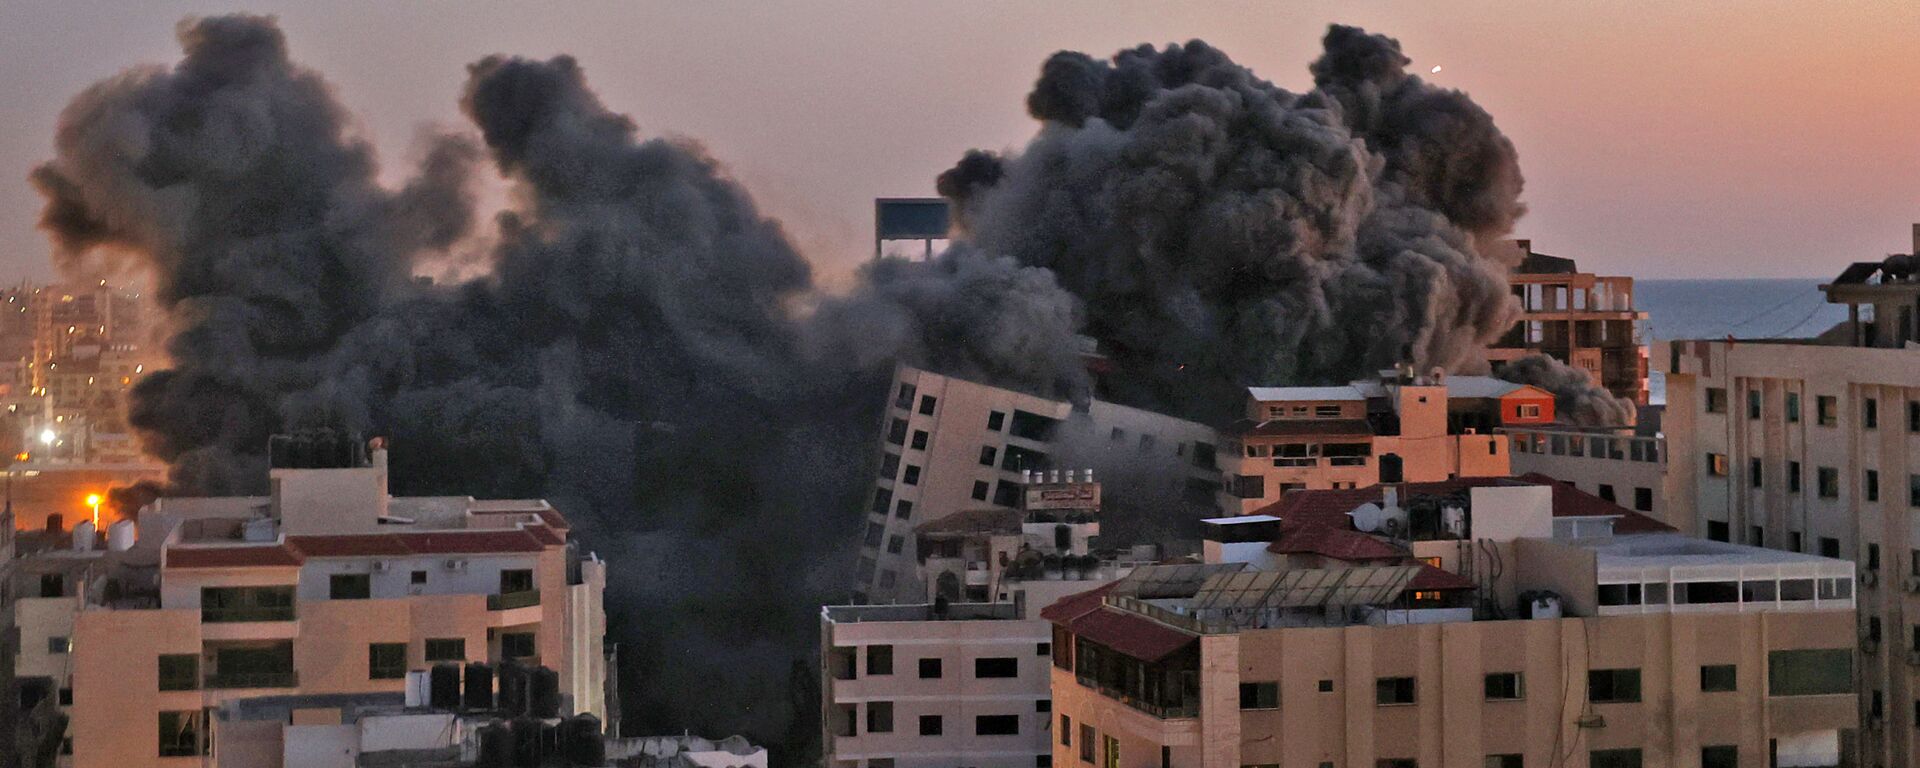 Пожарные тушат горящие многоквартирные дома после израильских авиаударов в городе Газа - главная - Sputnik Afrique, 1920, 18.05.2021